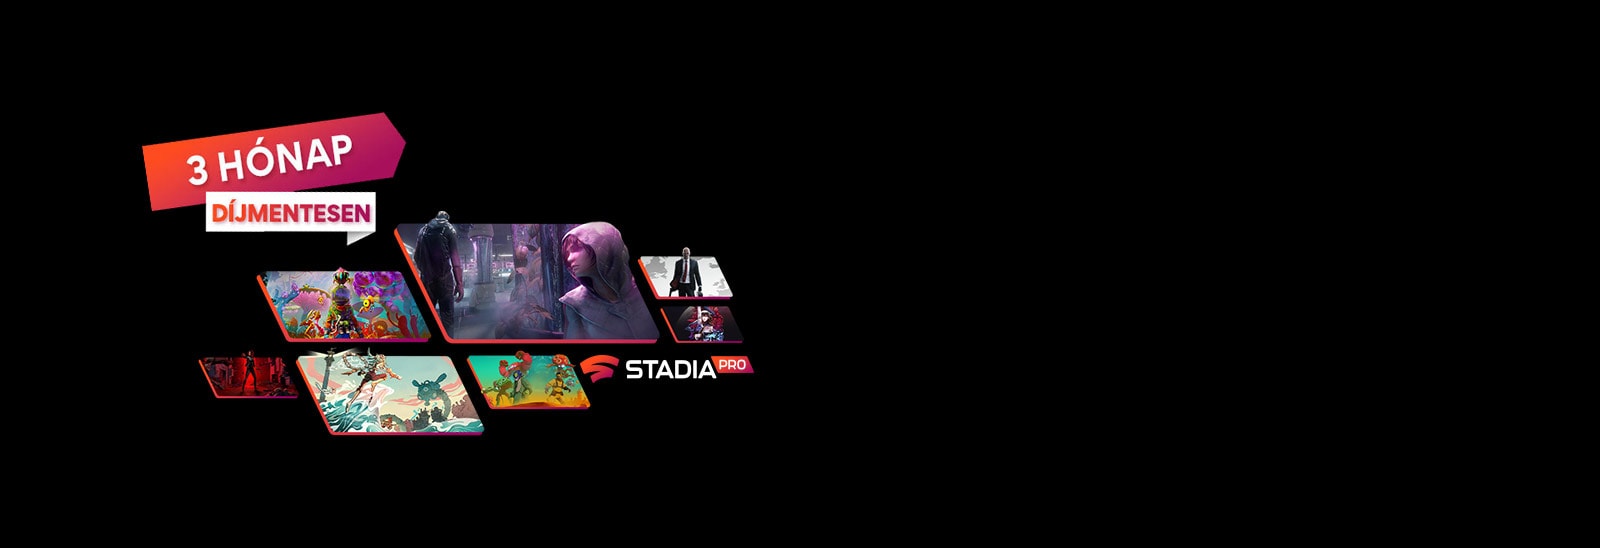 A Stadia alkalmazásban játszható különböző játékok képei láthatók egy piros szikrázó részecskékkel teli sötét háttér előtt.